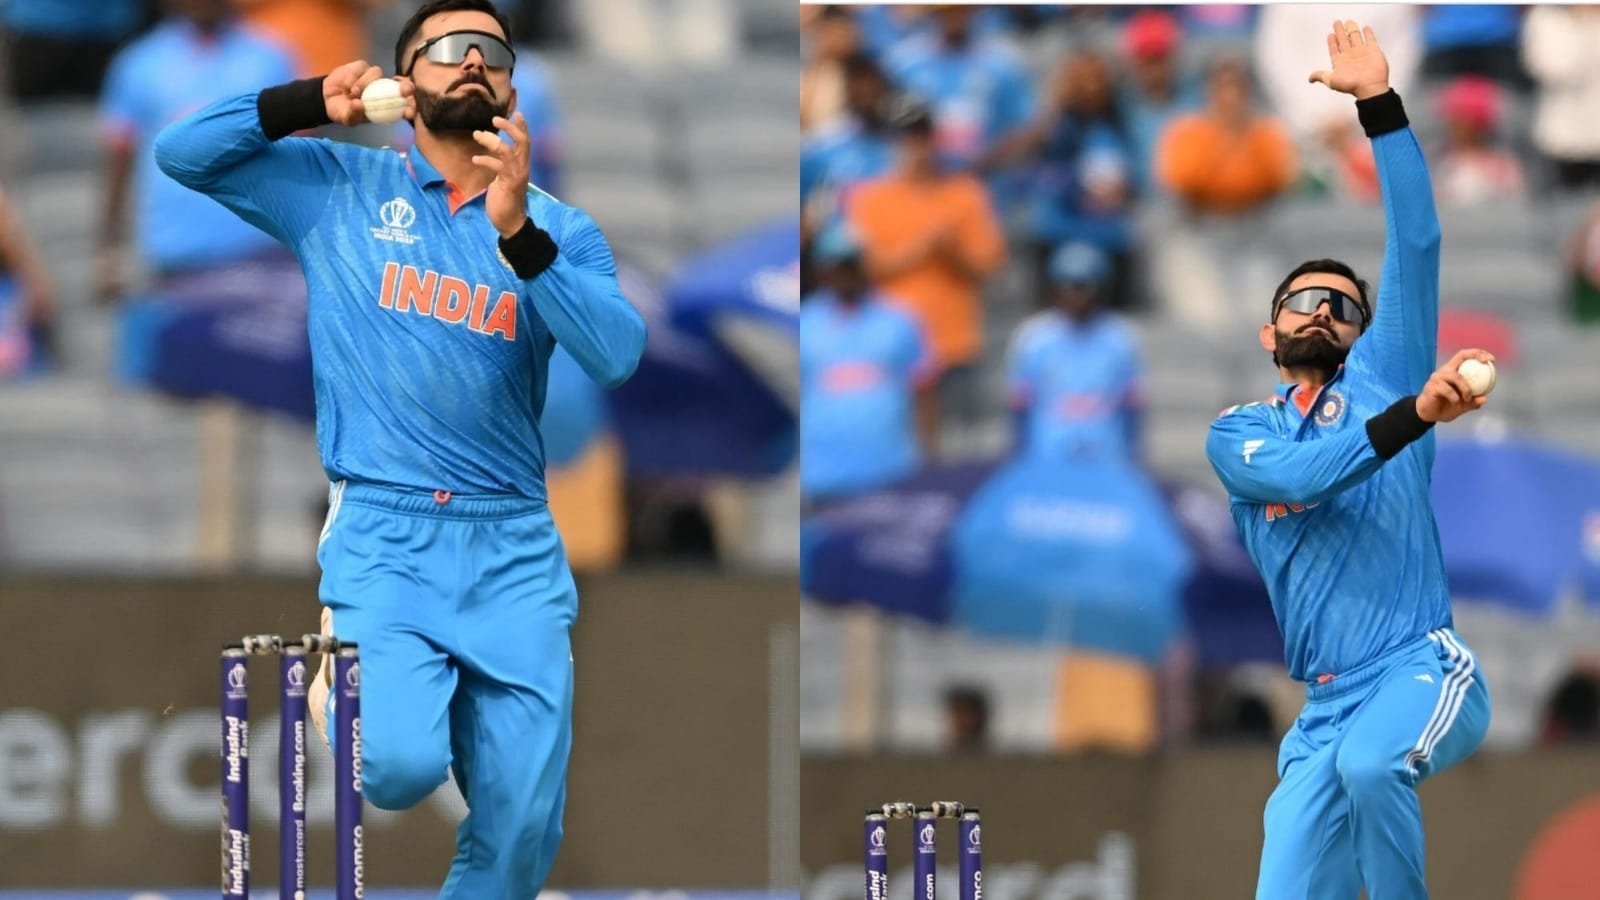 Pune stadium erupts in joy as Virat Kohli makes ODI bowling comeback